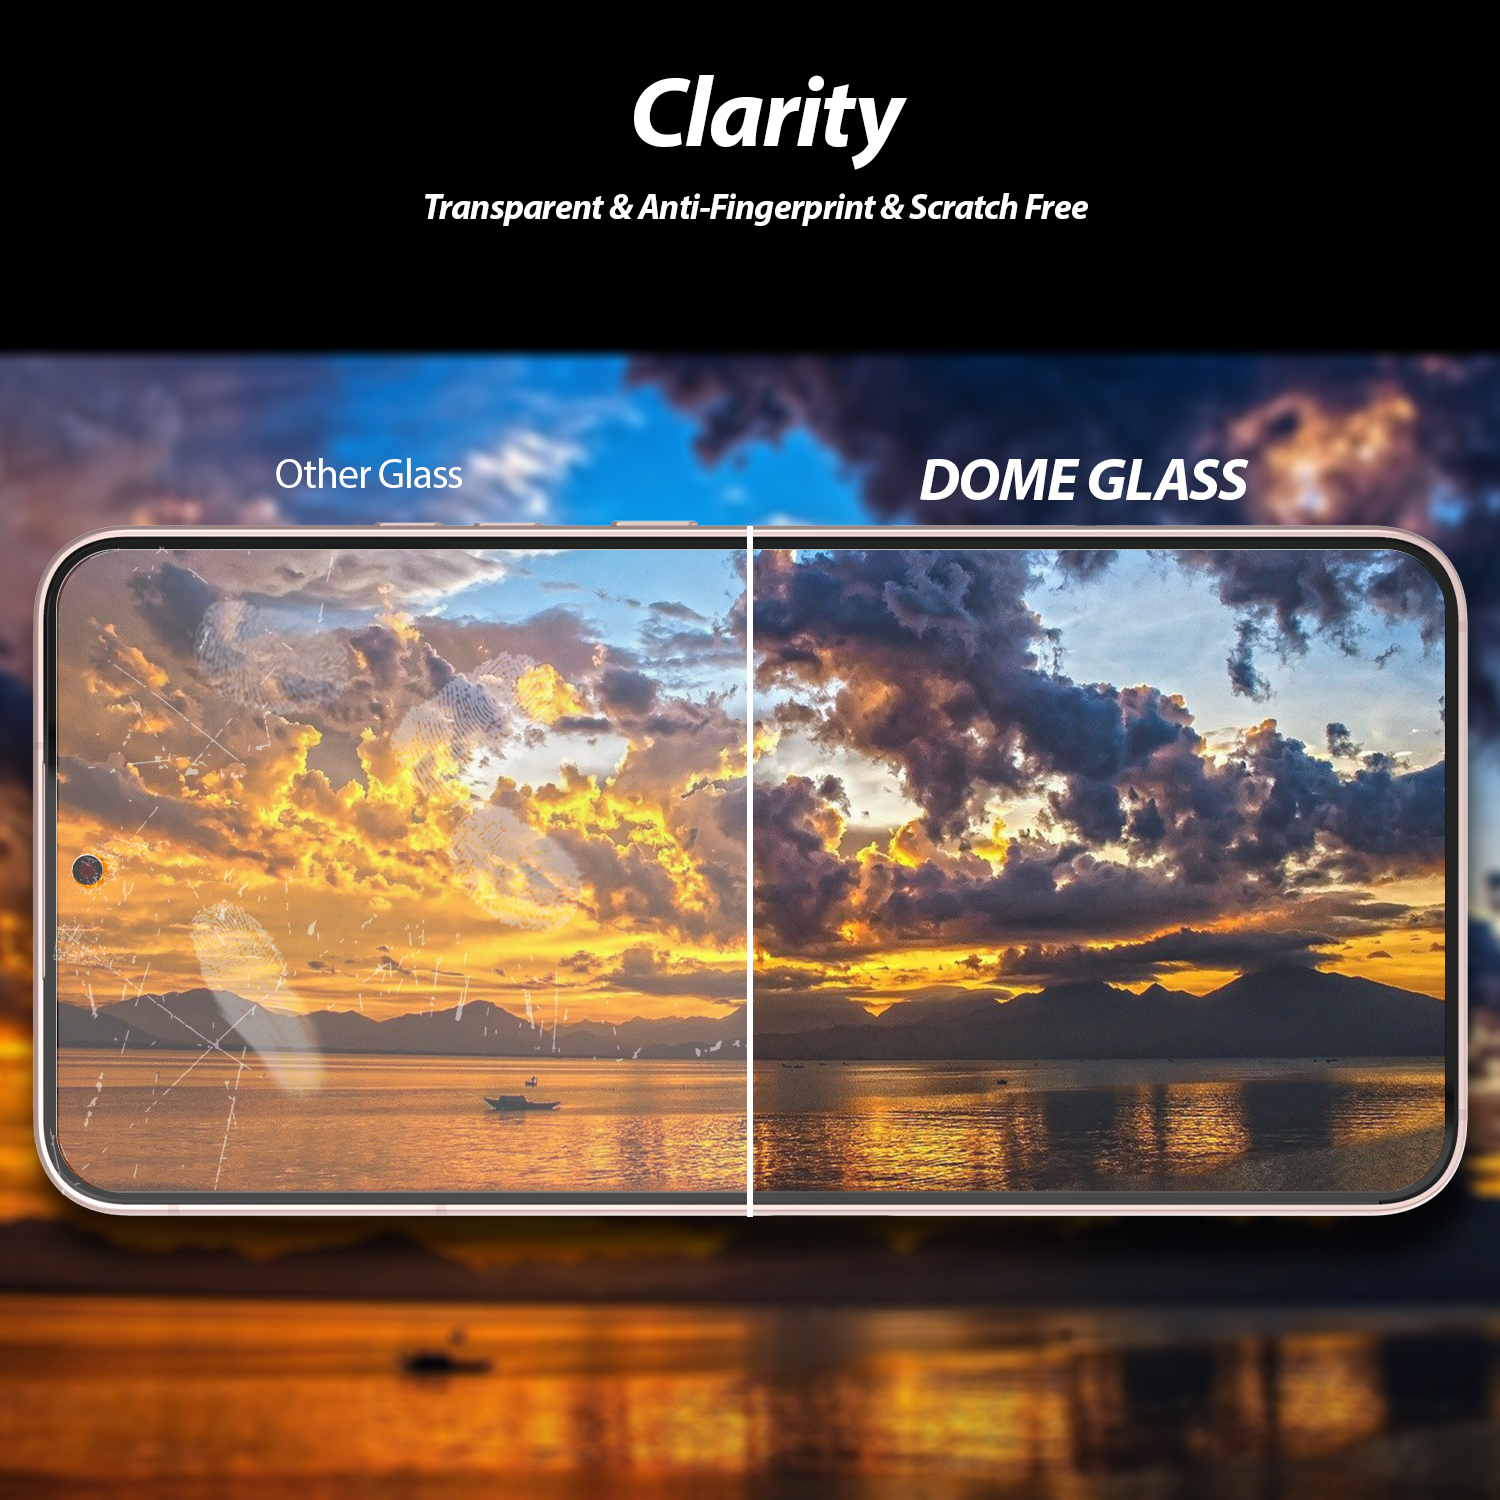 ฟิล์มกระจกนิรภัย Whitestone Dome Glass - Samsung Galaxy S22 Plus - อุปกรณ์การติดแบบครบชุด (ฟิล์ม 2 แผ่น)